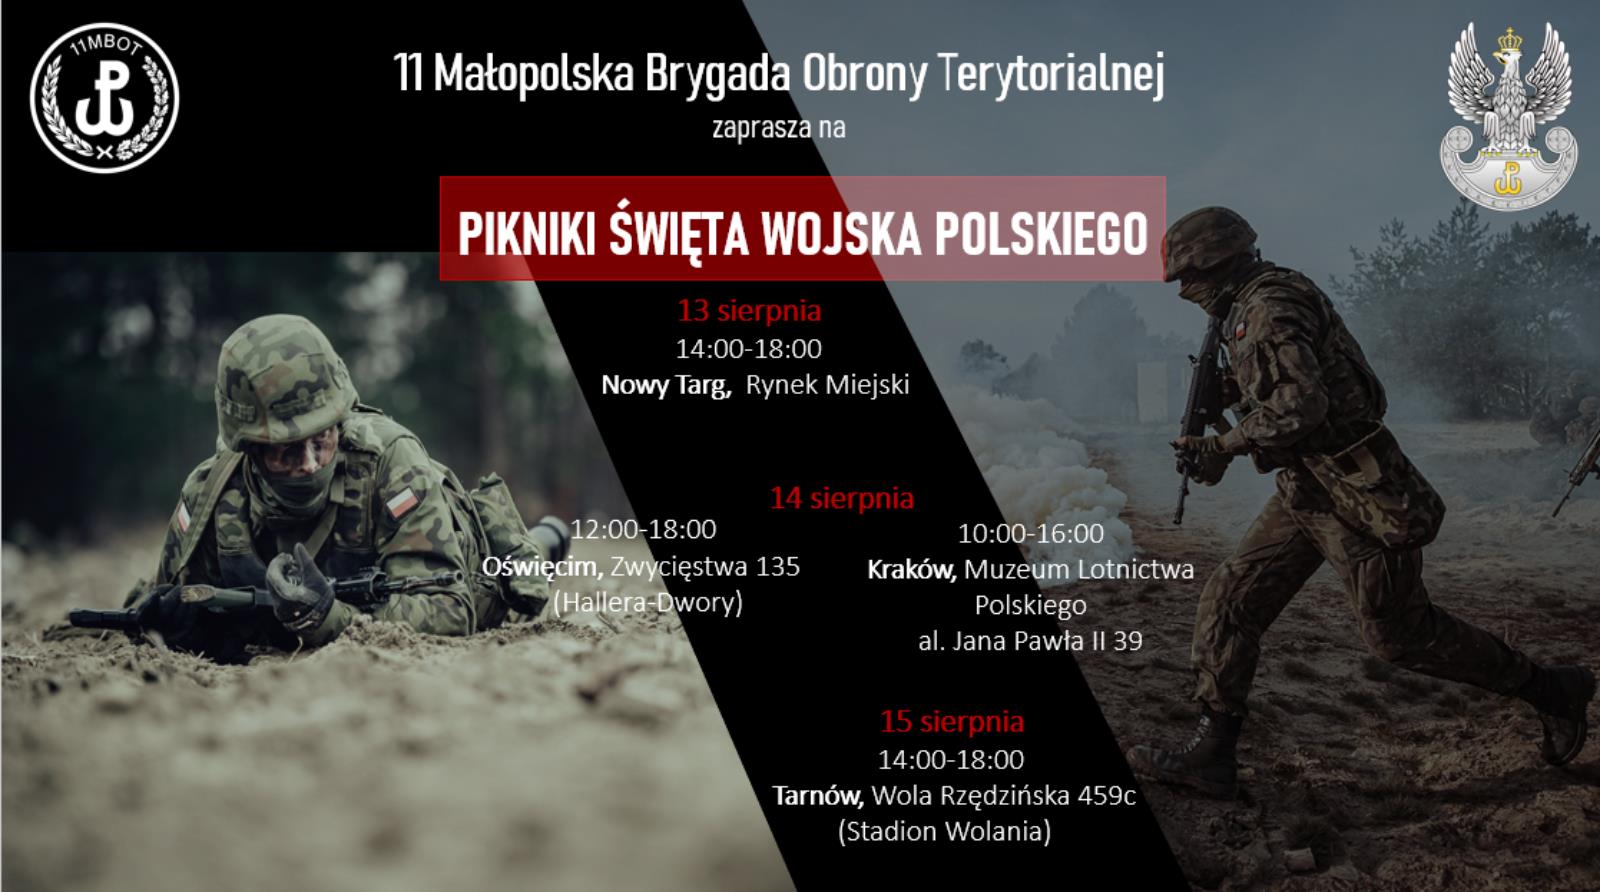 Pikniki Święta Wojska Polskiego